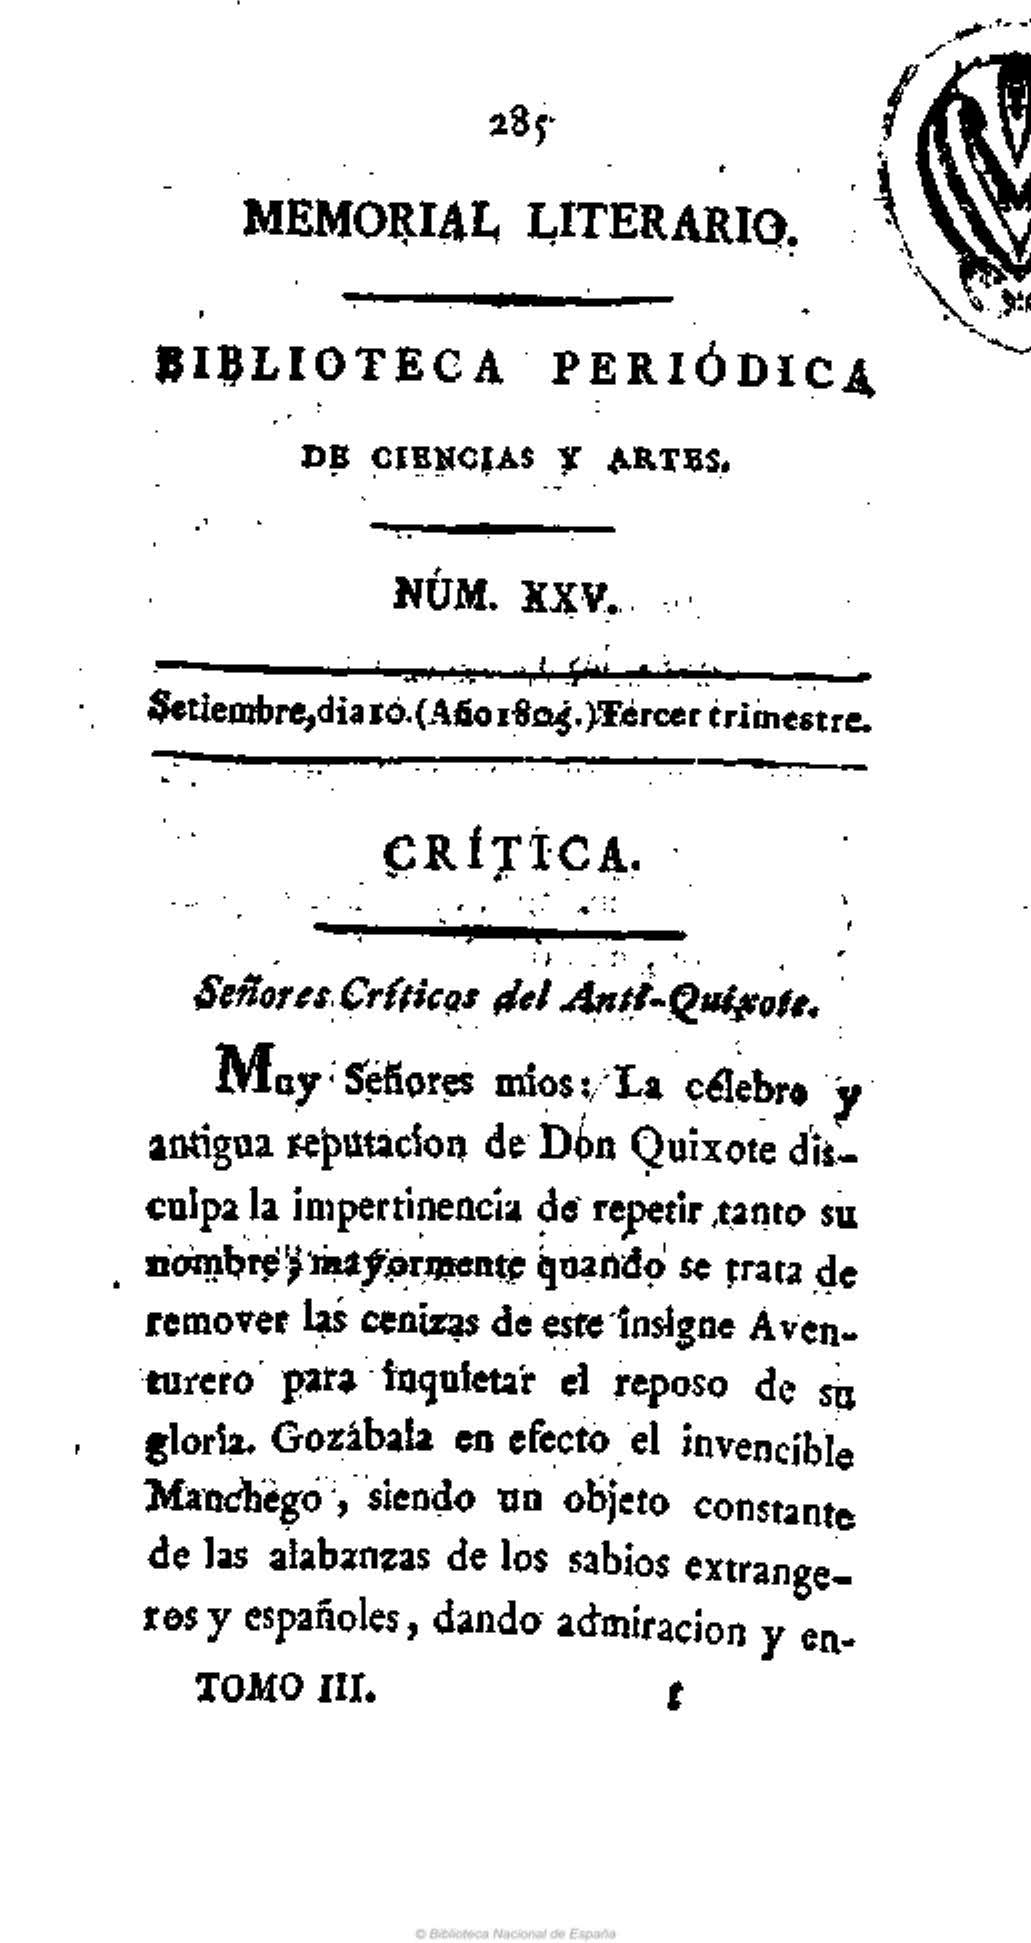 Señores editores del Memorial Literario [Carta decimocuarta en respuesta al Anti-Quijote]